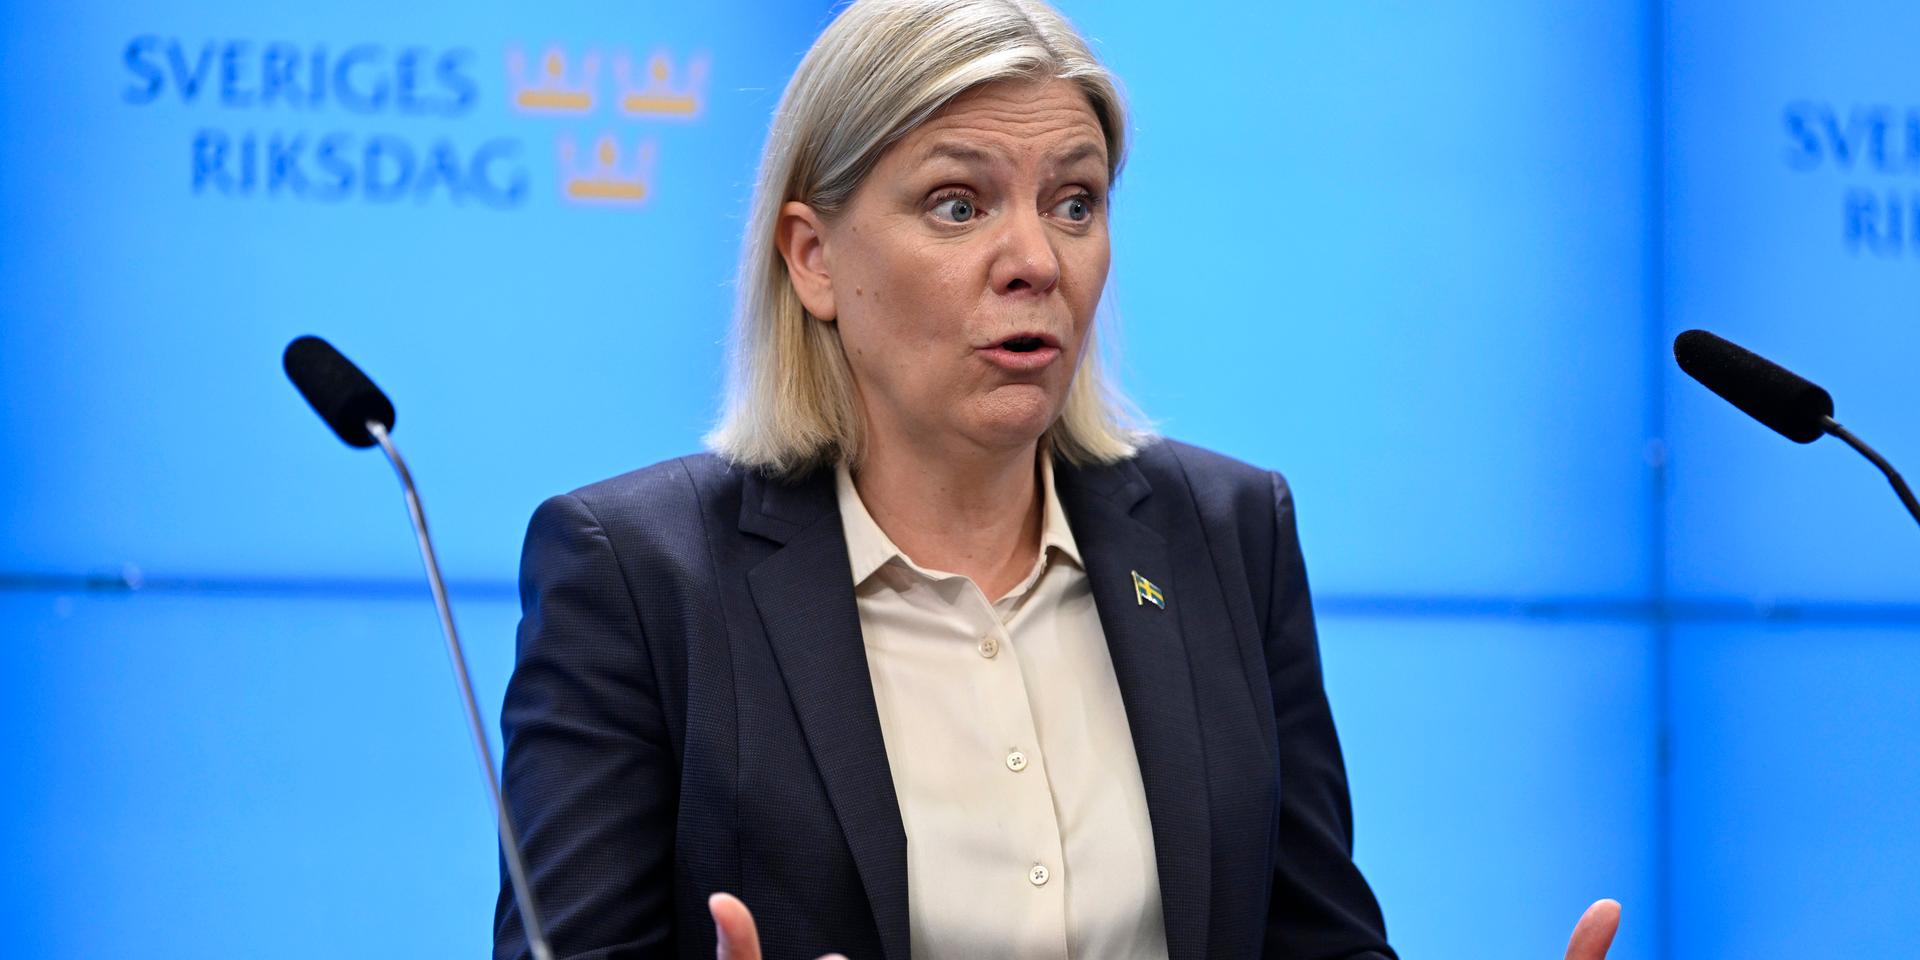 Skatt. Statsminister Magdalena Andersson (S) menade som finansminister att jobbskatteavdraget inte påverkade incitamenten att arbeta – något hon fått fel i.